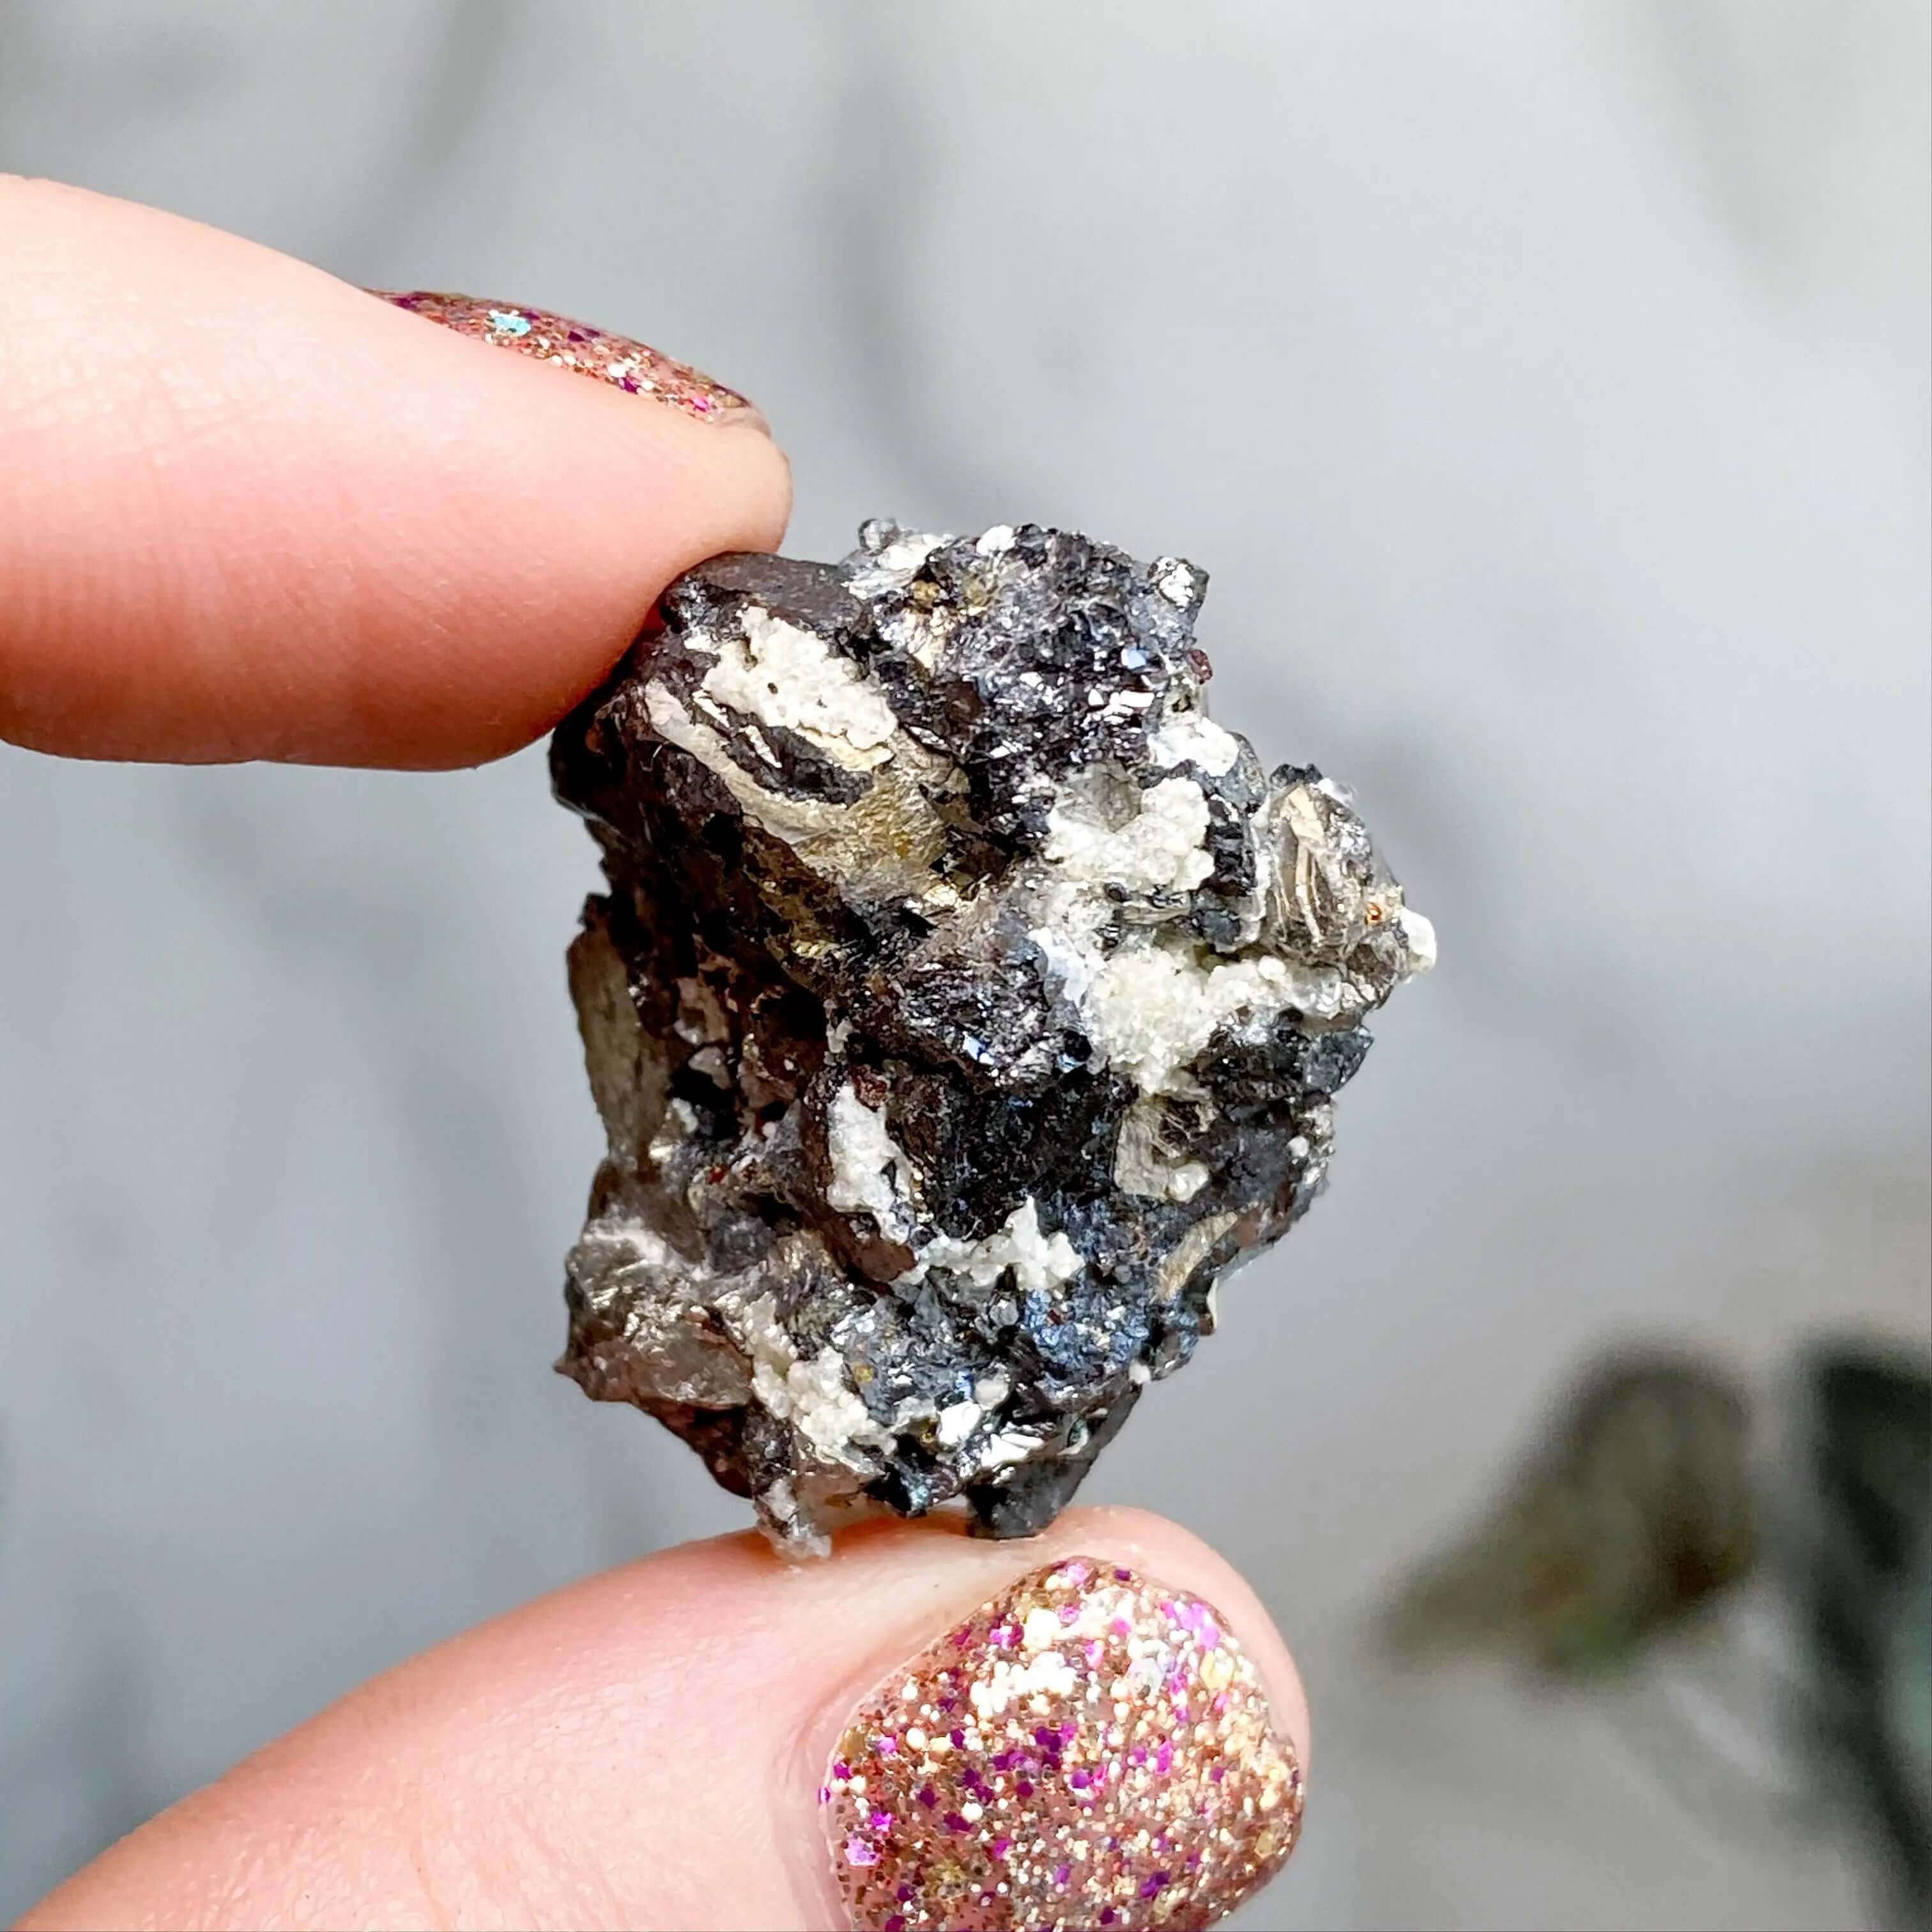 Mixed Minerals | Stock C Mooncat Crystals